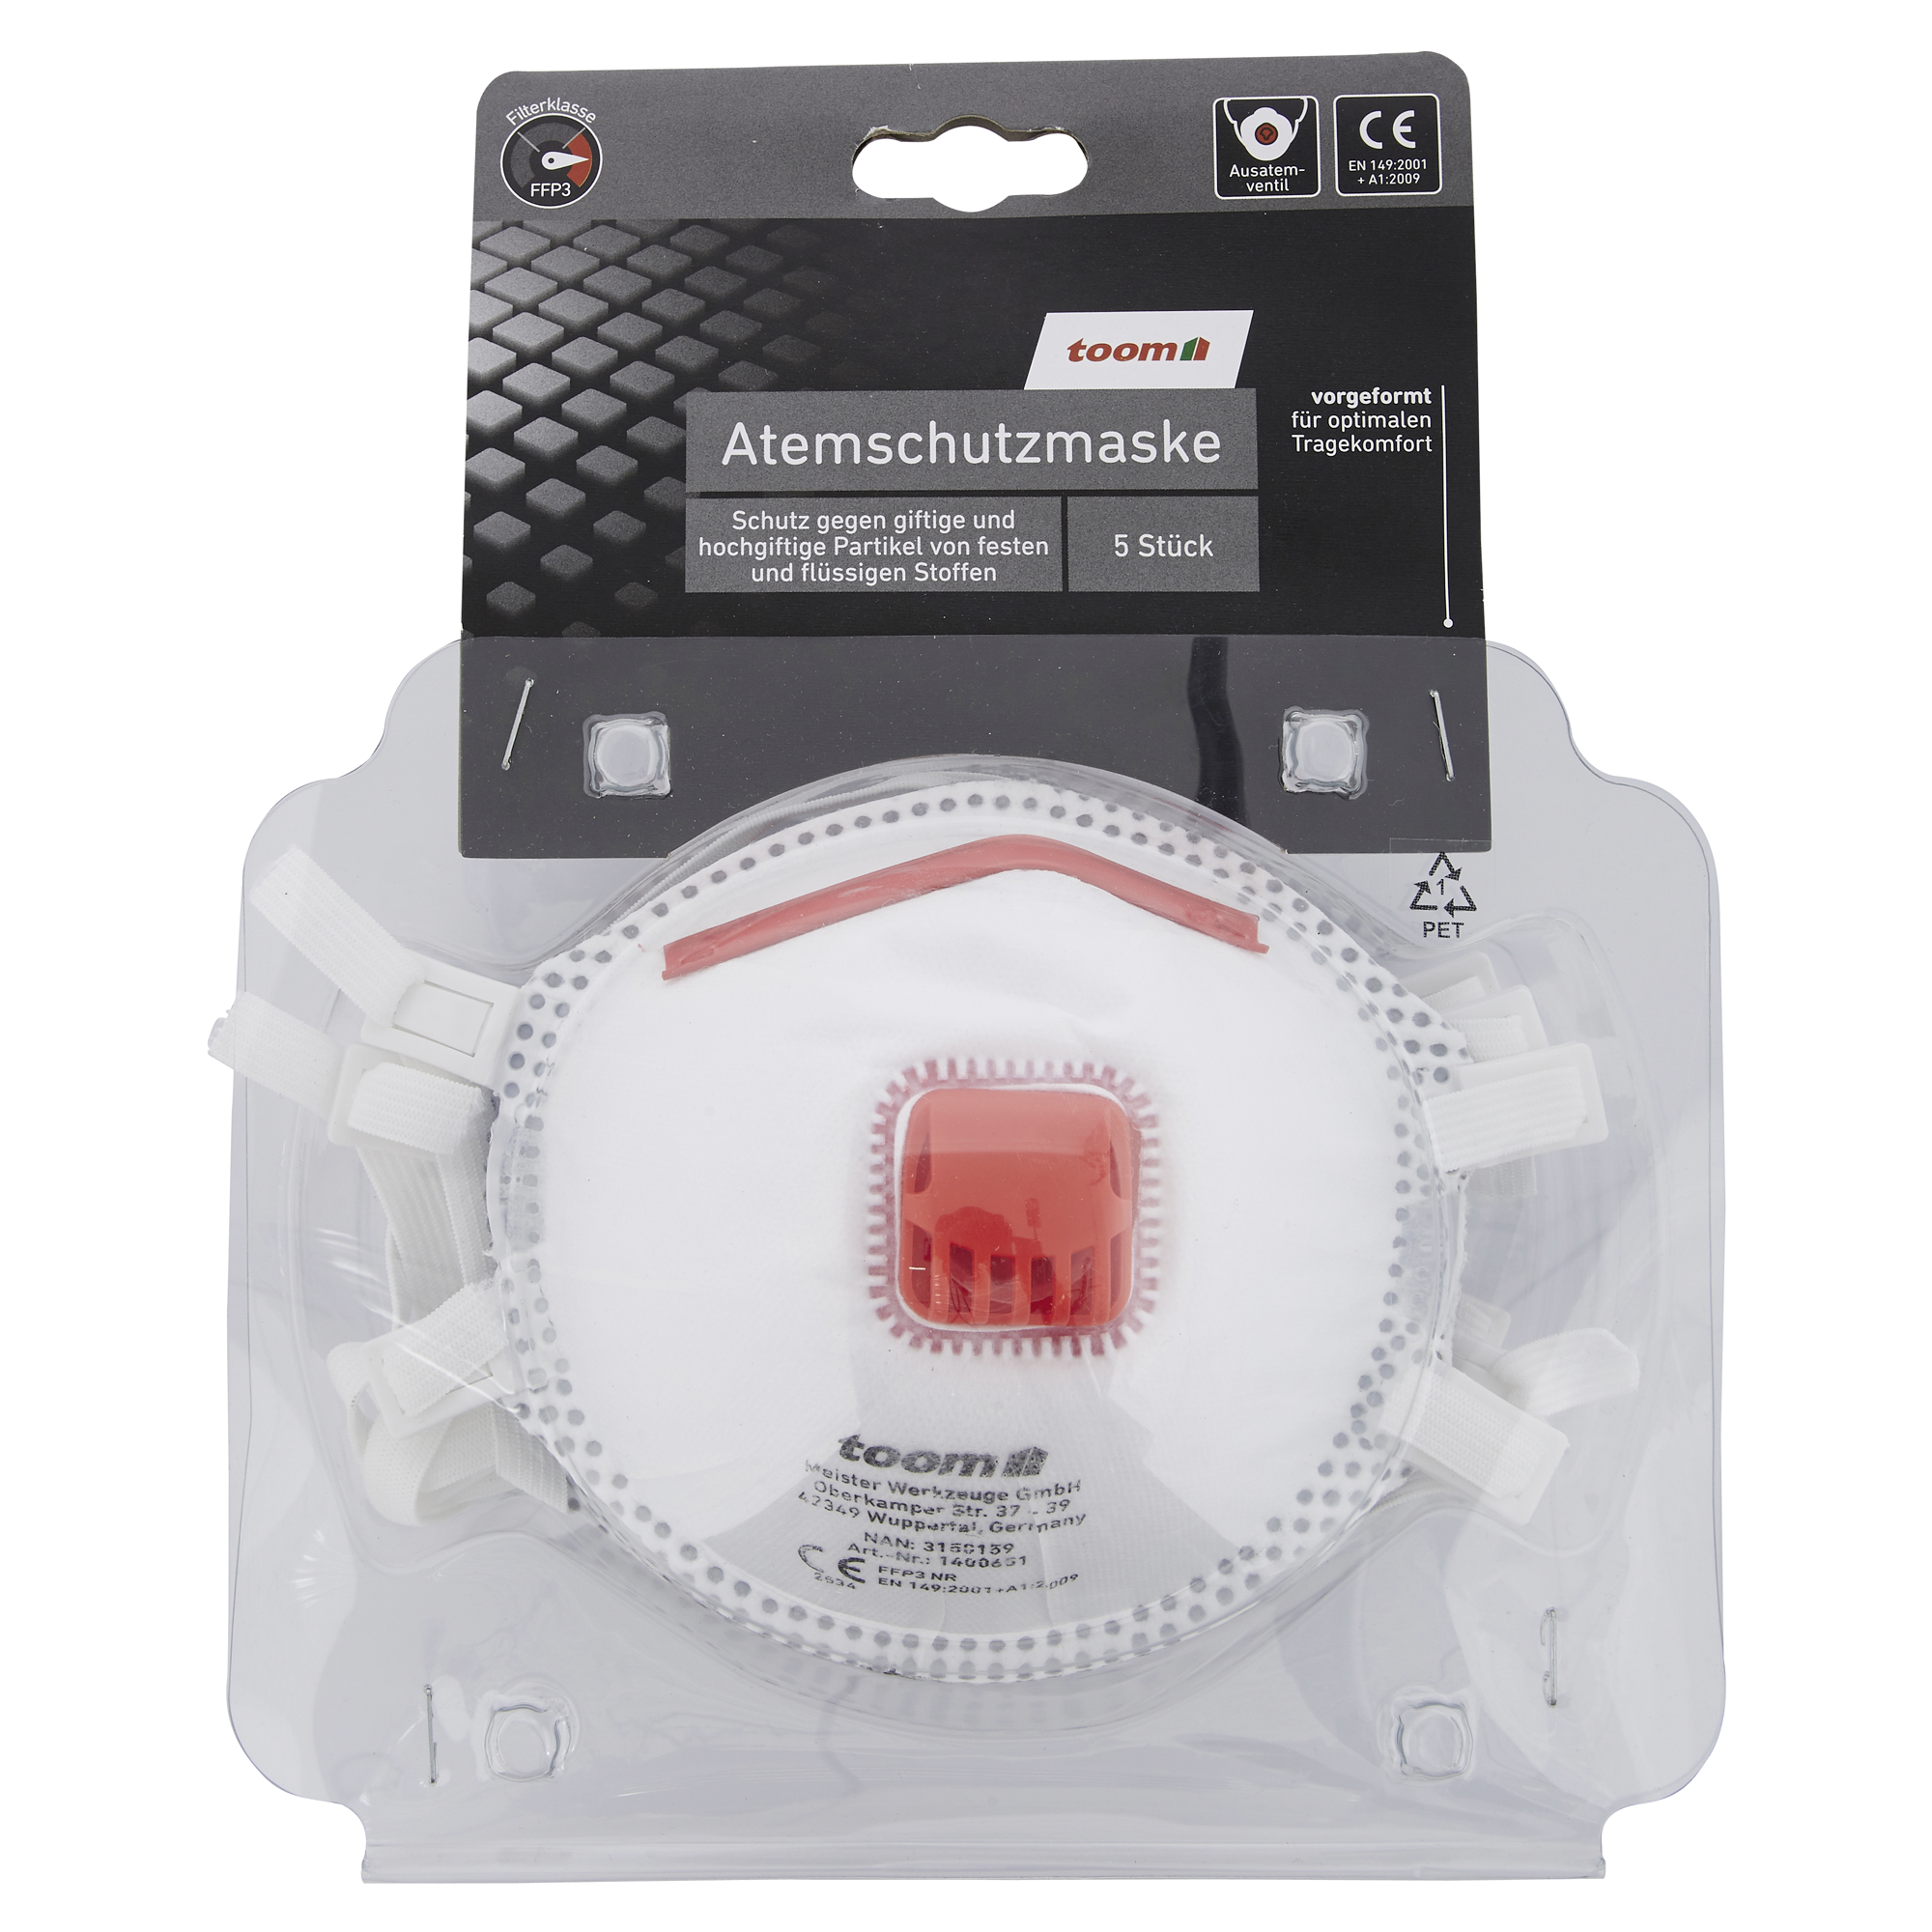 FFP3-Atemschutzmaske mit Ventil, 5 Stück + product picture